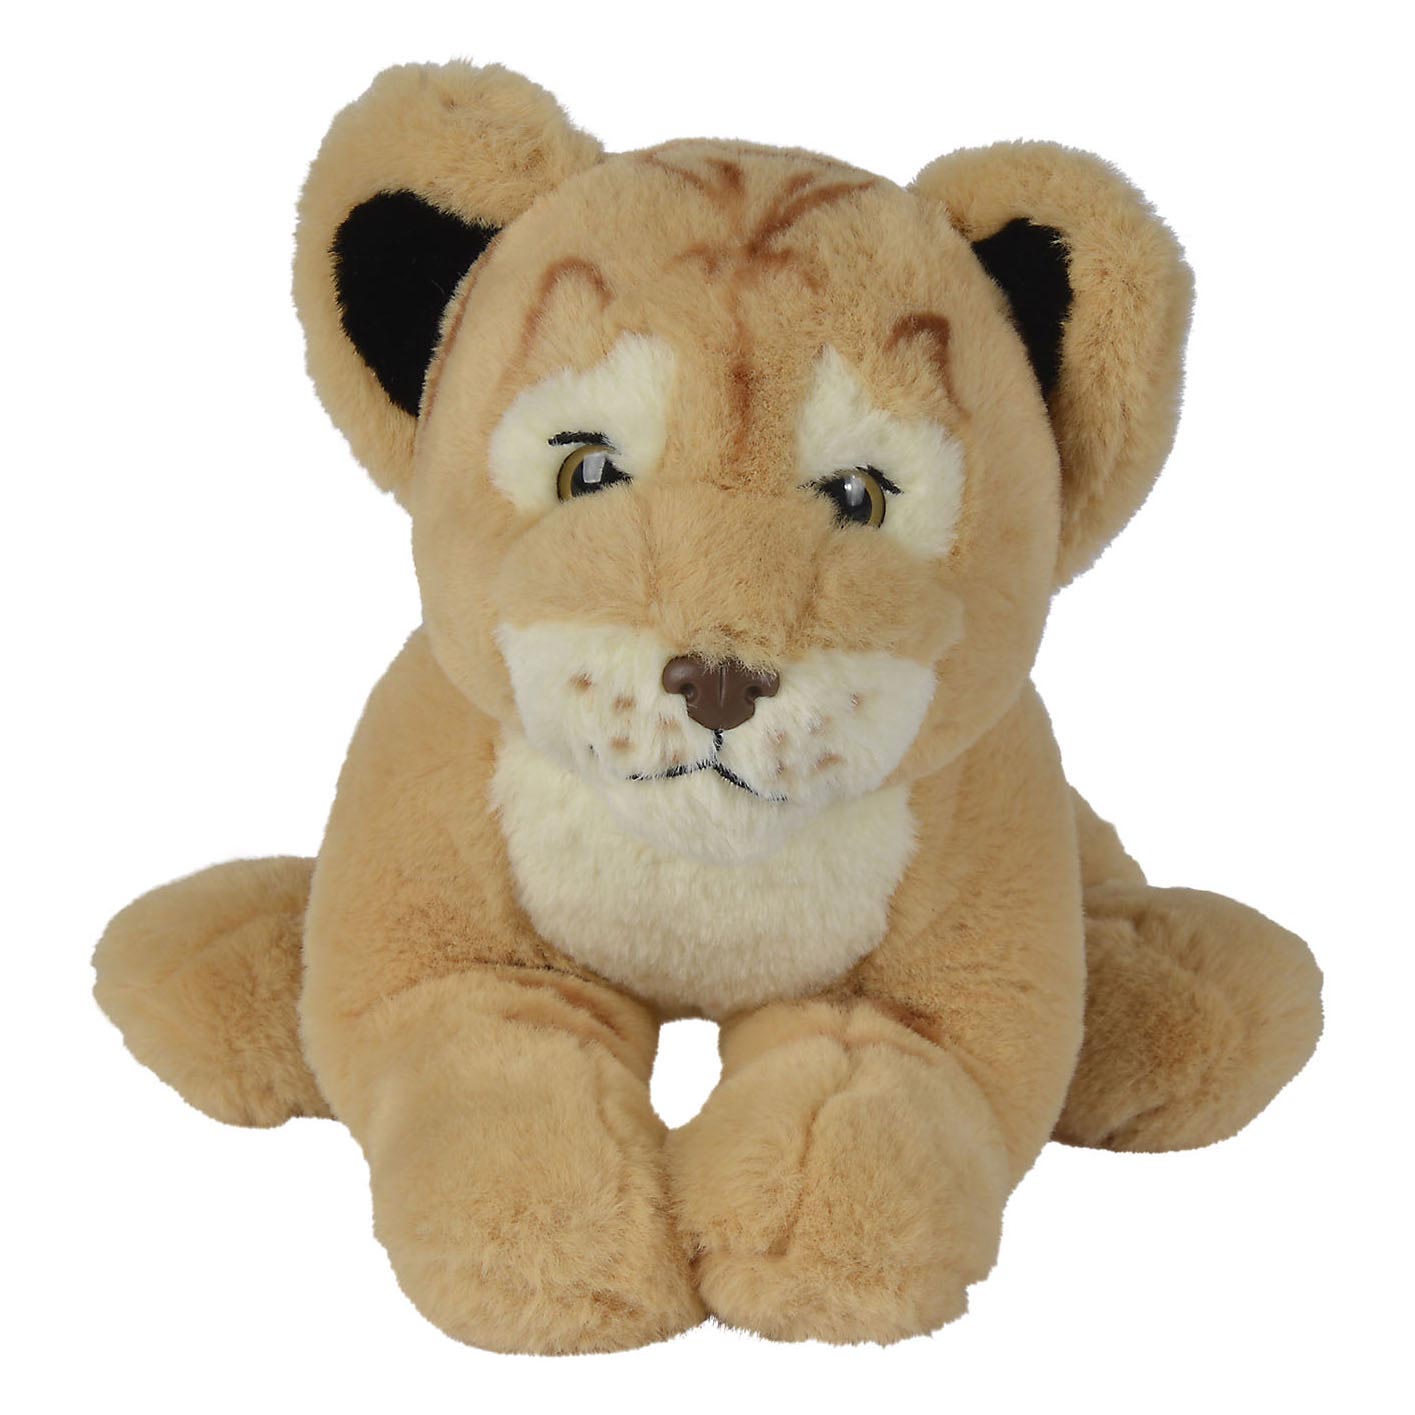 Lion en peluche National Geographic, 25 cm